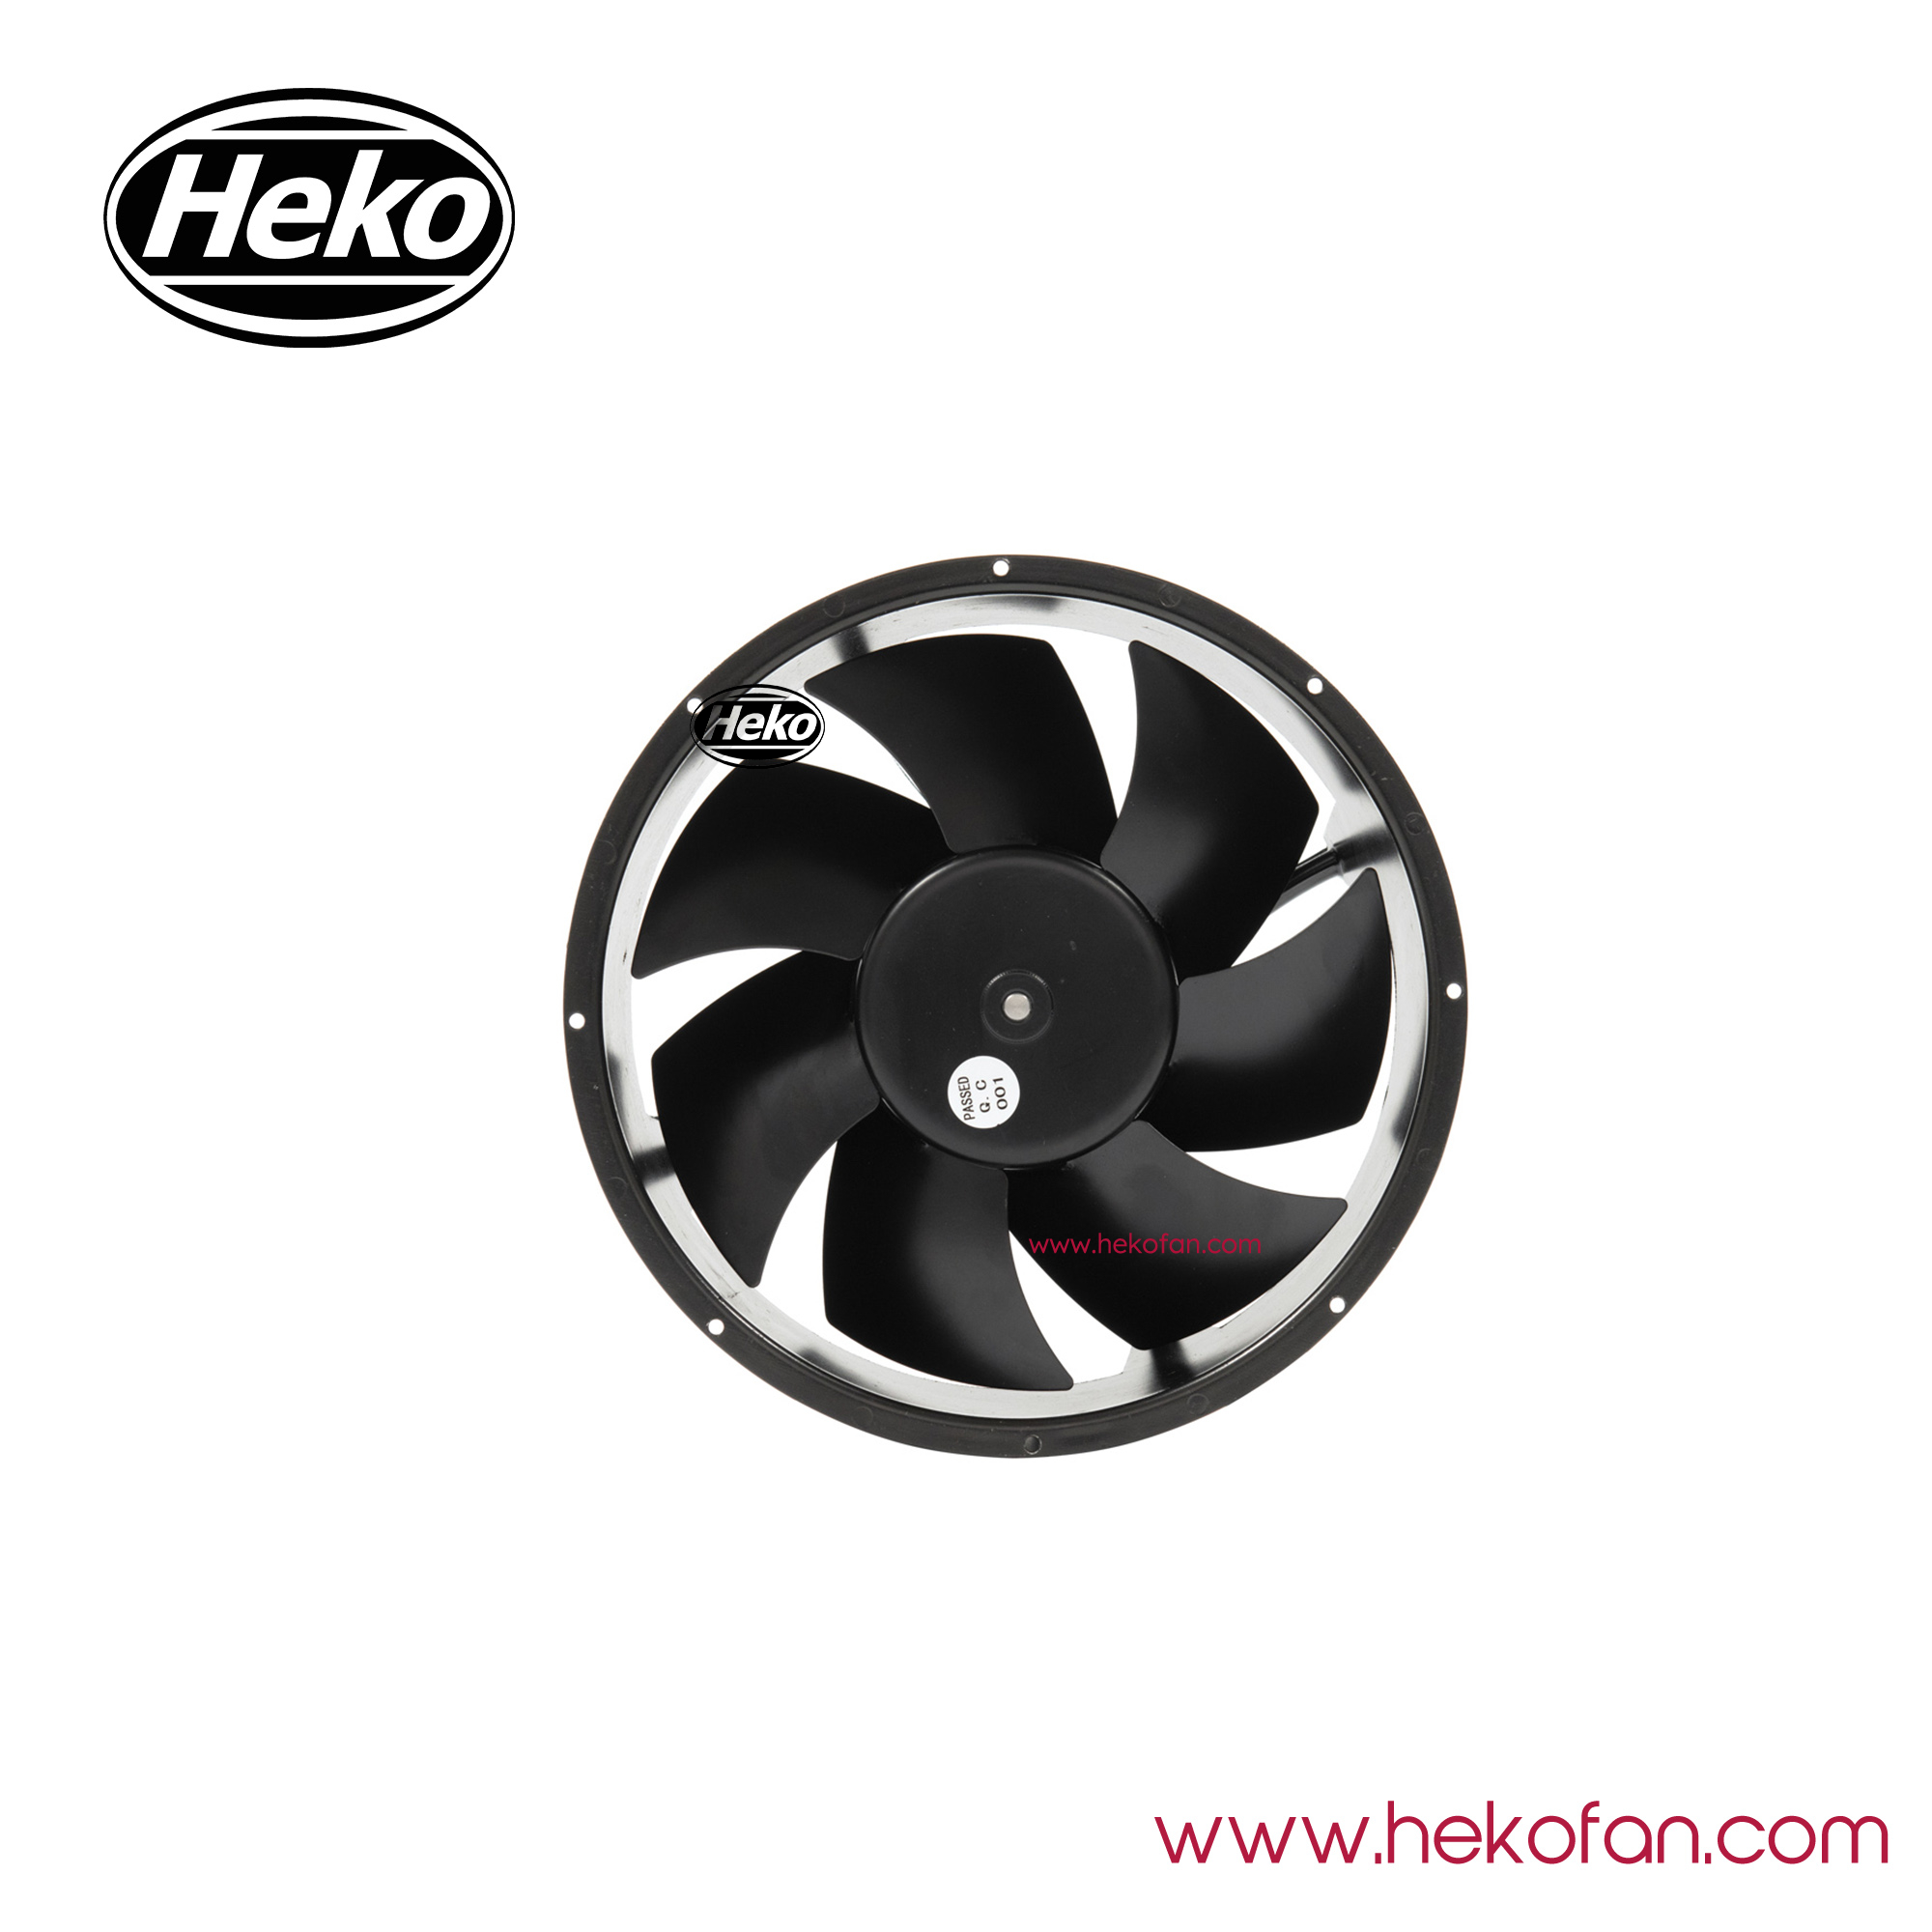 Ventilador industrial axial HEKO DC215mm de acero inoxidable para animales